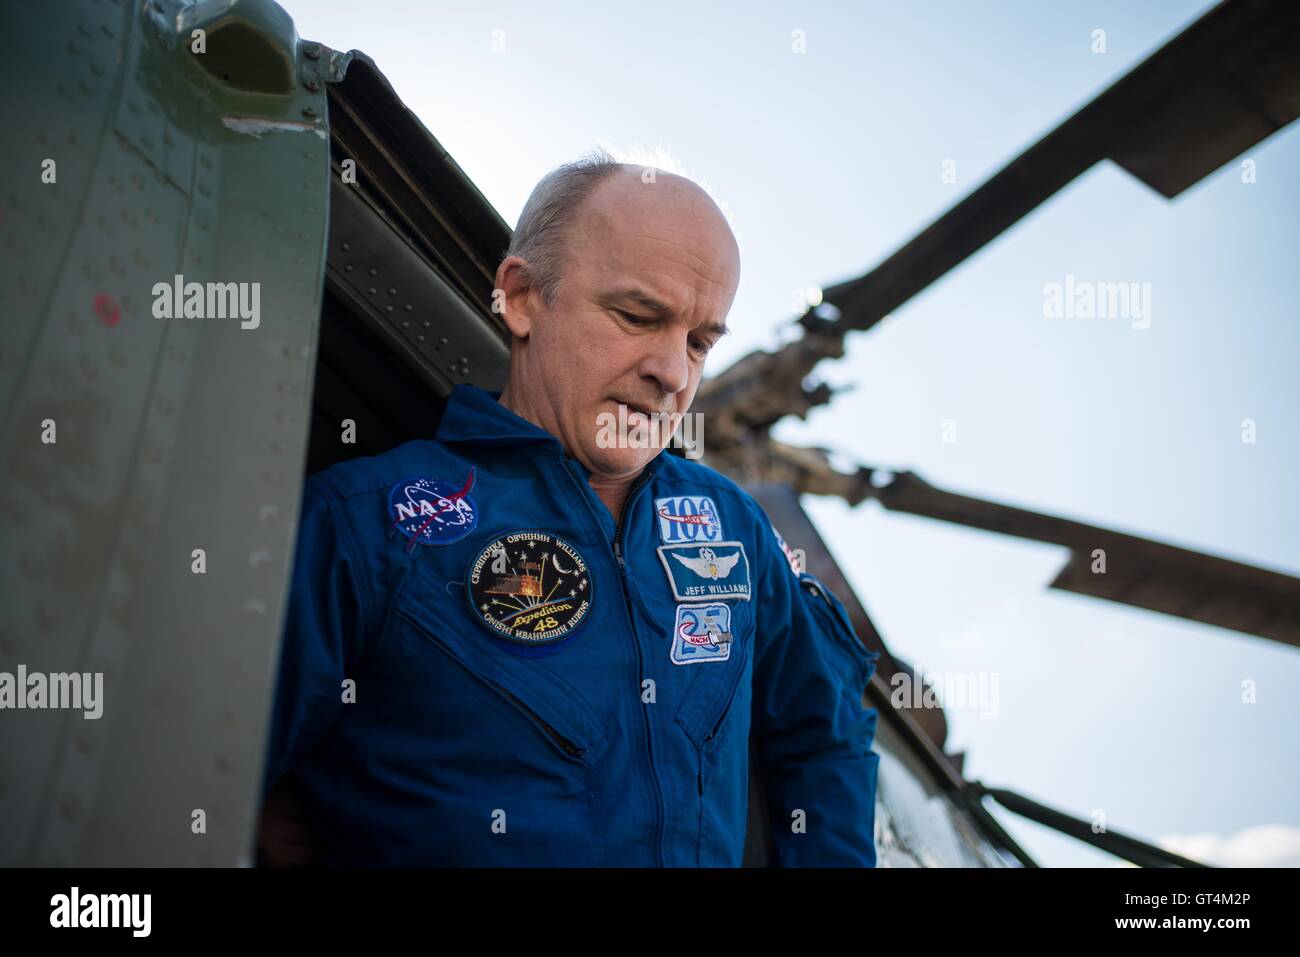 L'astronaute de la NASA Jeff Williams arrive à l'aéroport de Karaganda au Kazakhstan après l'aéroport, avec l'expédition 48 de la Station spatiale internationale, l'équipage a atterri la capsule Soyouz TMA-20M 7 septembre 2016 après 172 jours dans l'espace. Banque D'Images